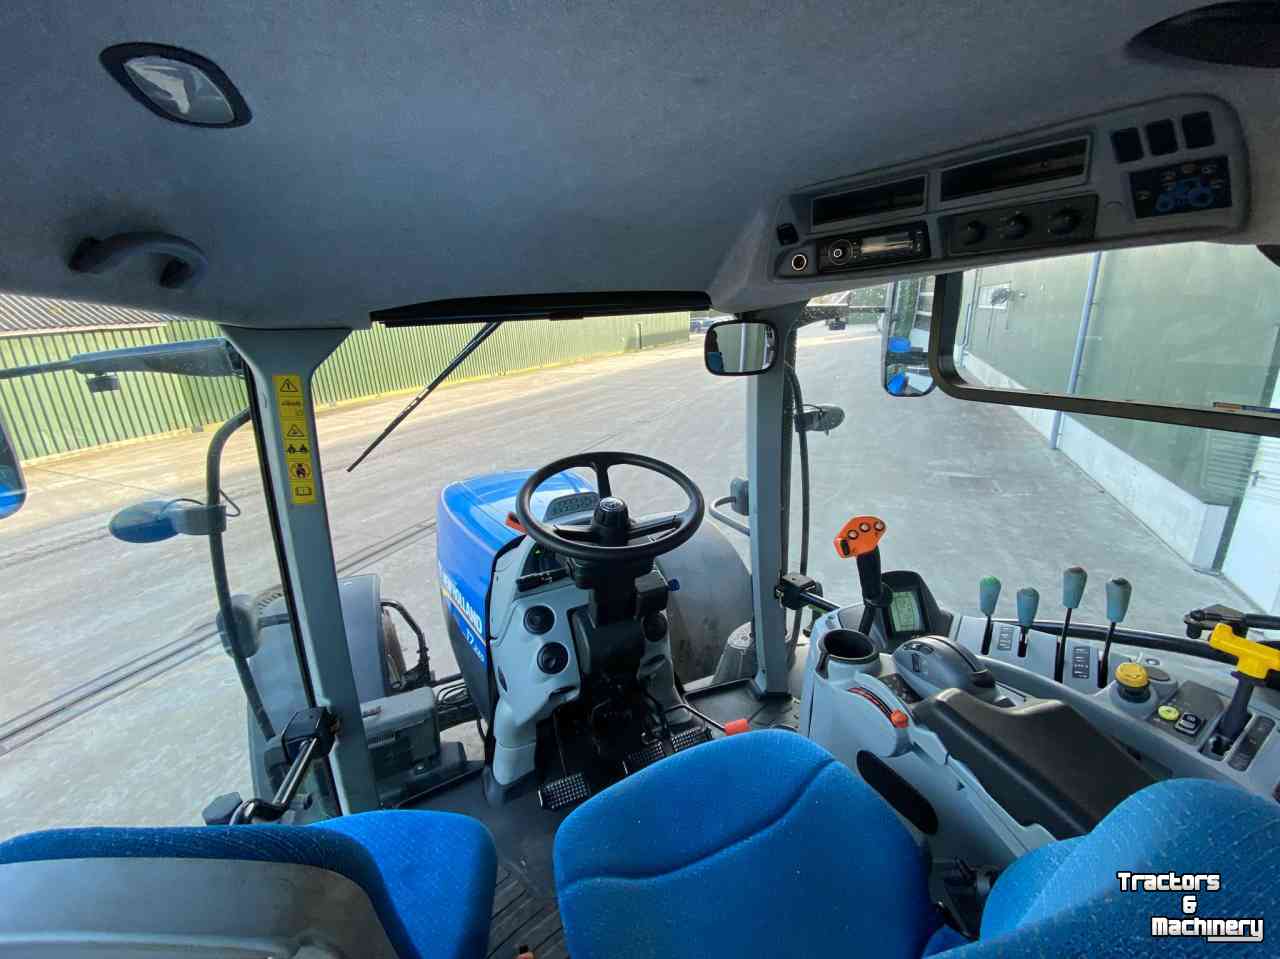 Tracteurs New Holland T7-220 PC trekker tractor traktor tracteur